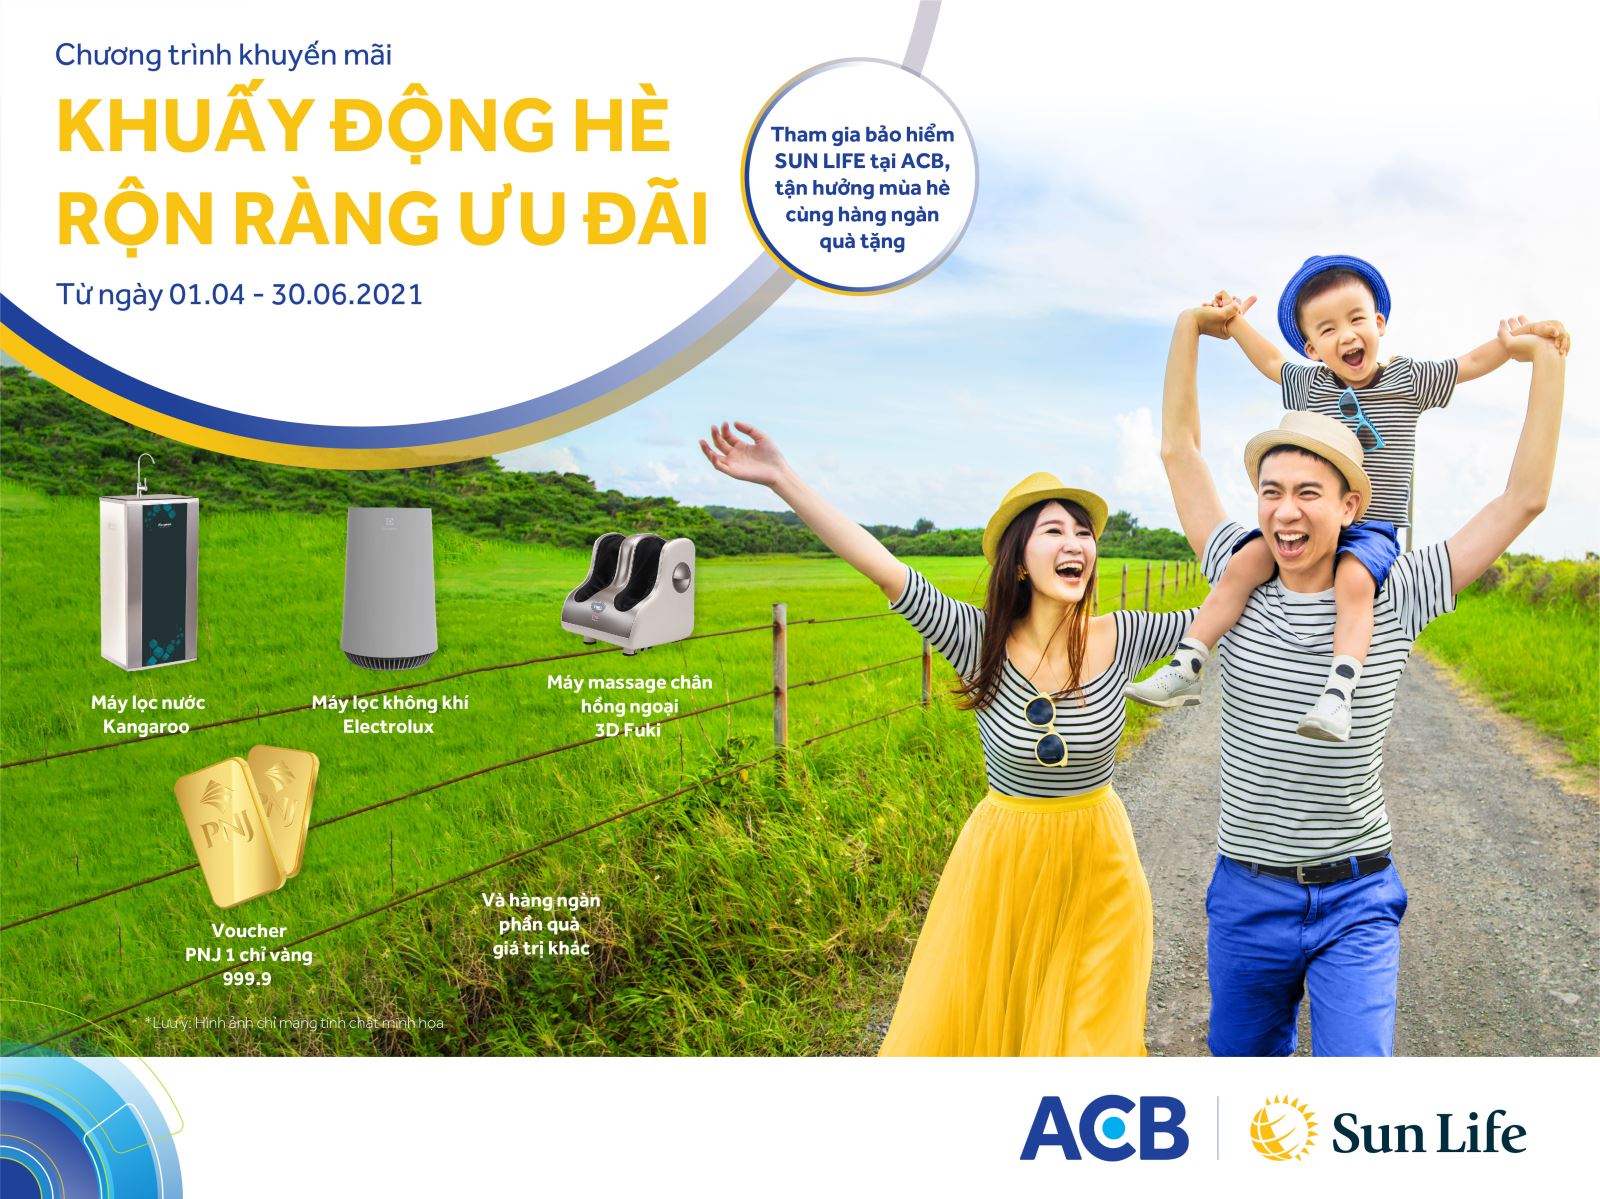 Sun Life Việt Nam khuyến mại dành cho khách hàng của ACB ...